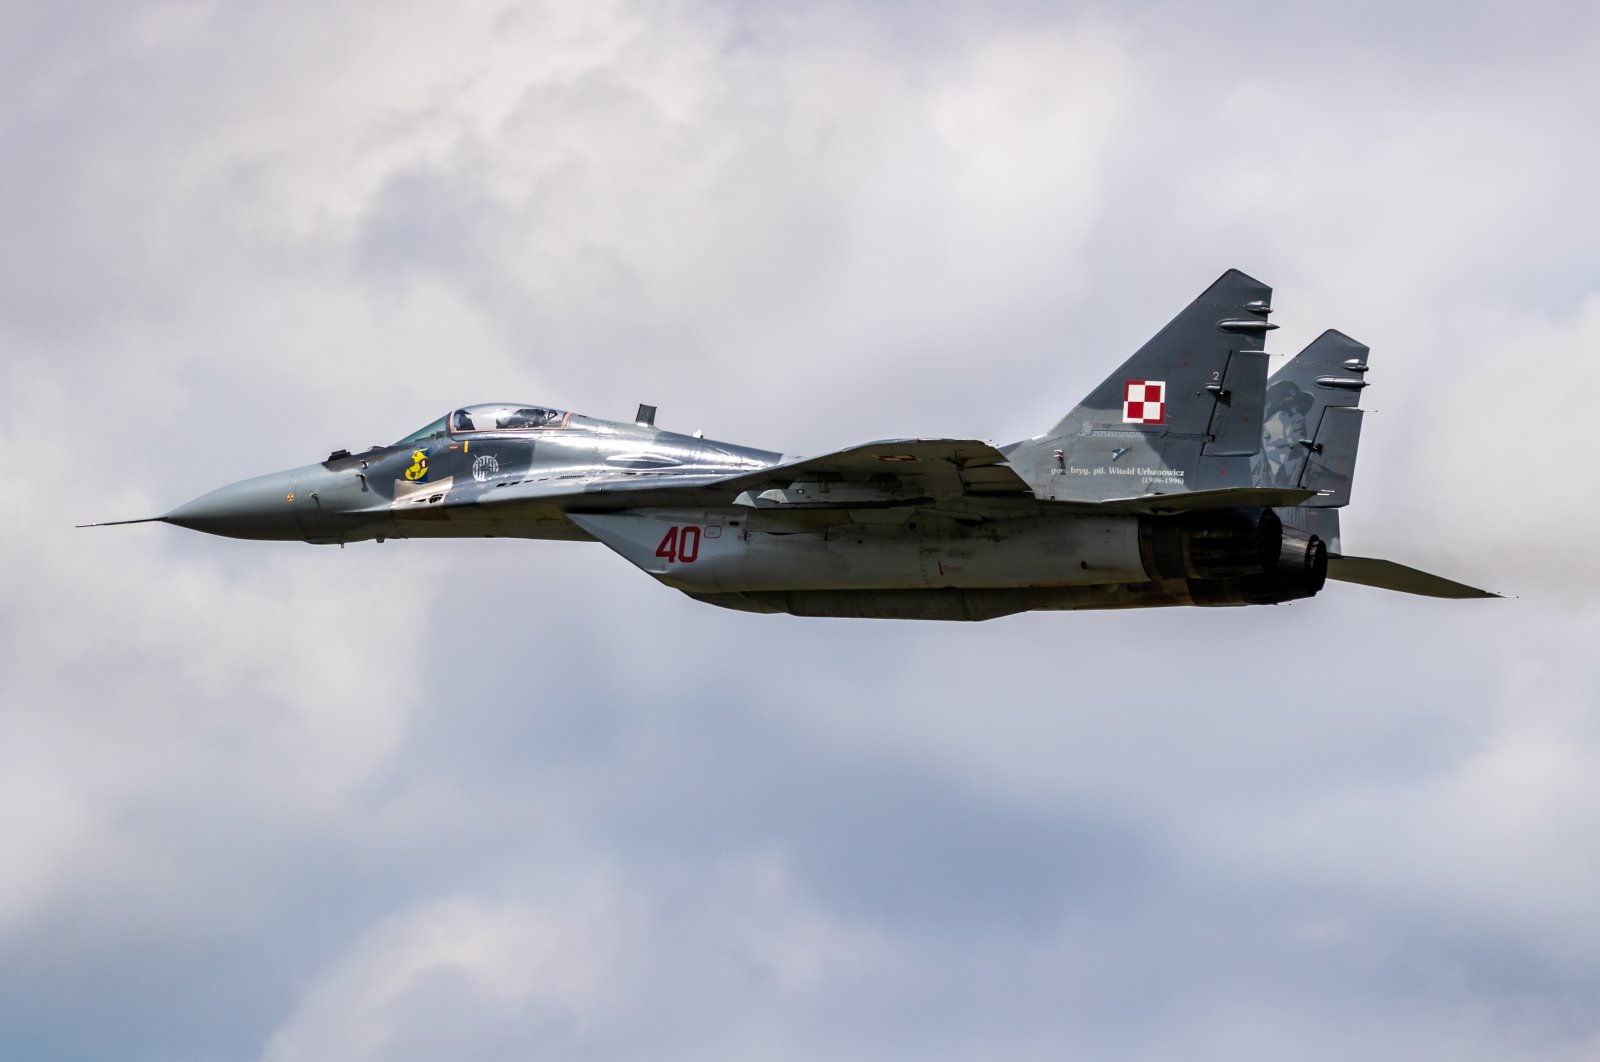 AS, Polandia menjajaki kesepakatan untuk memasok pesawat tempur era Soviet ke Ukraina